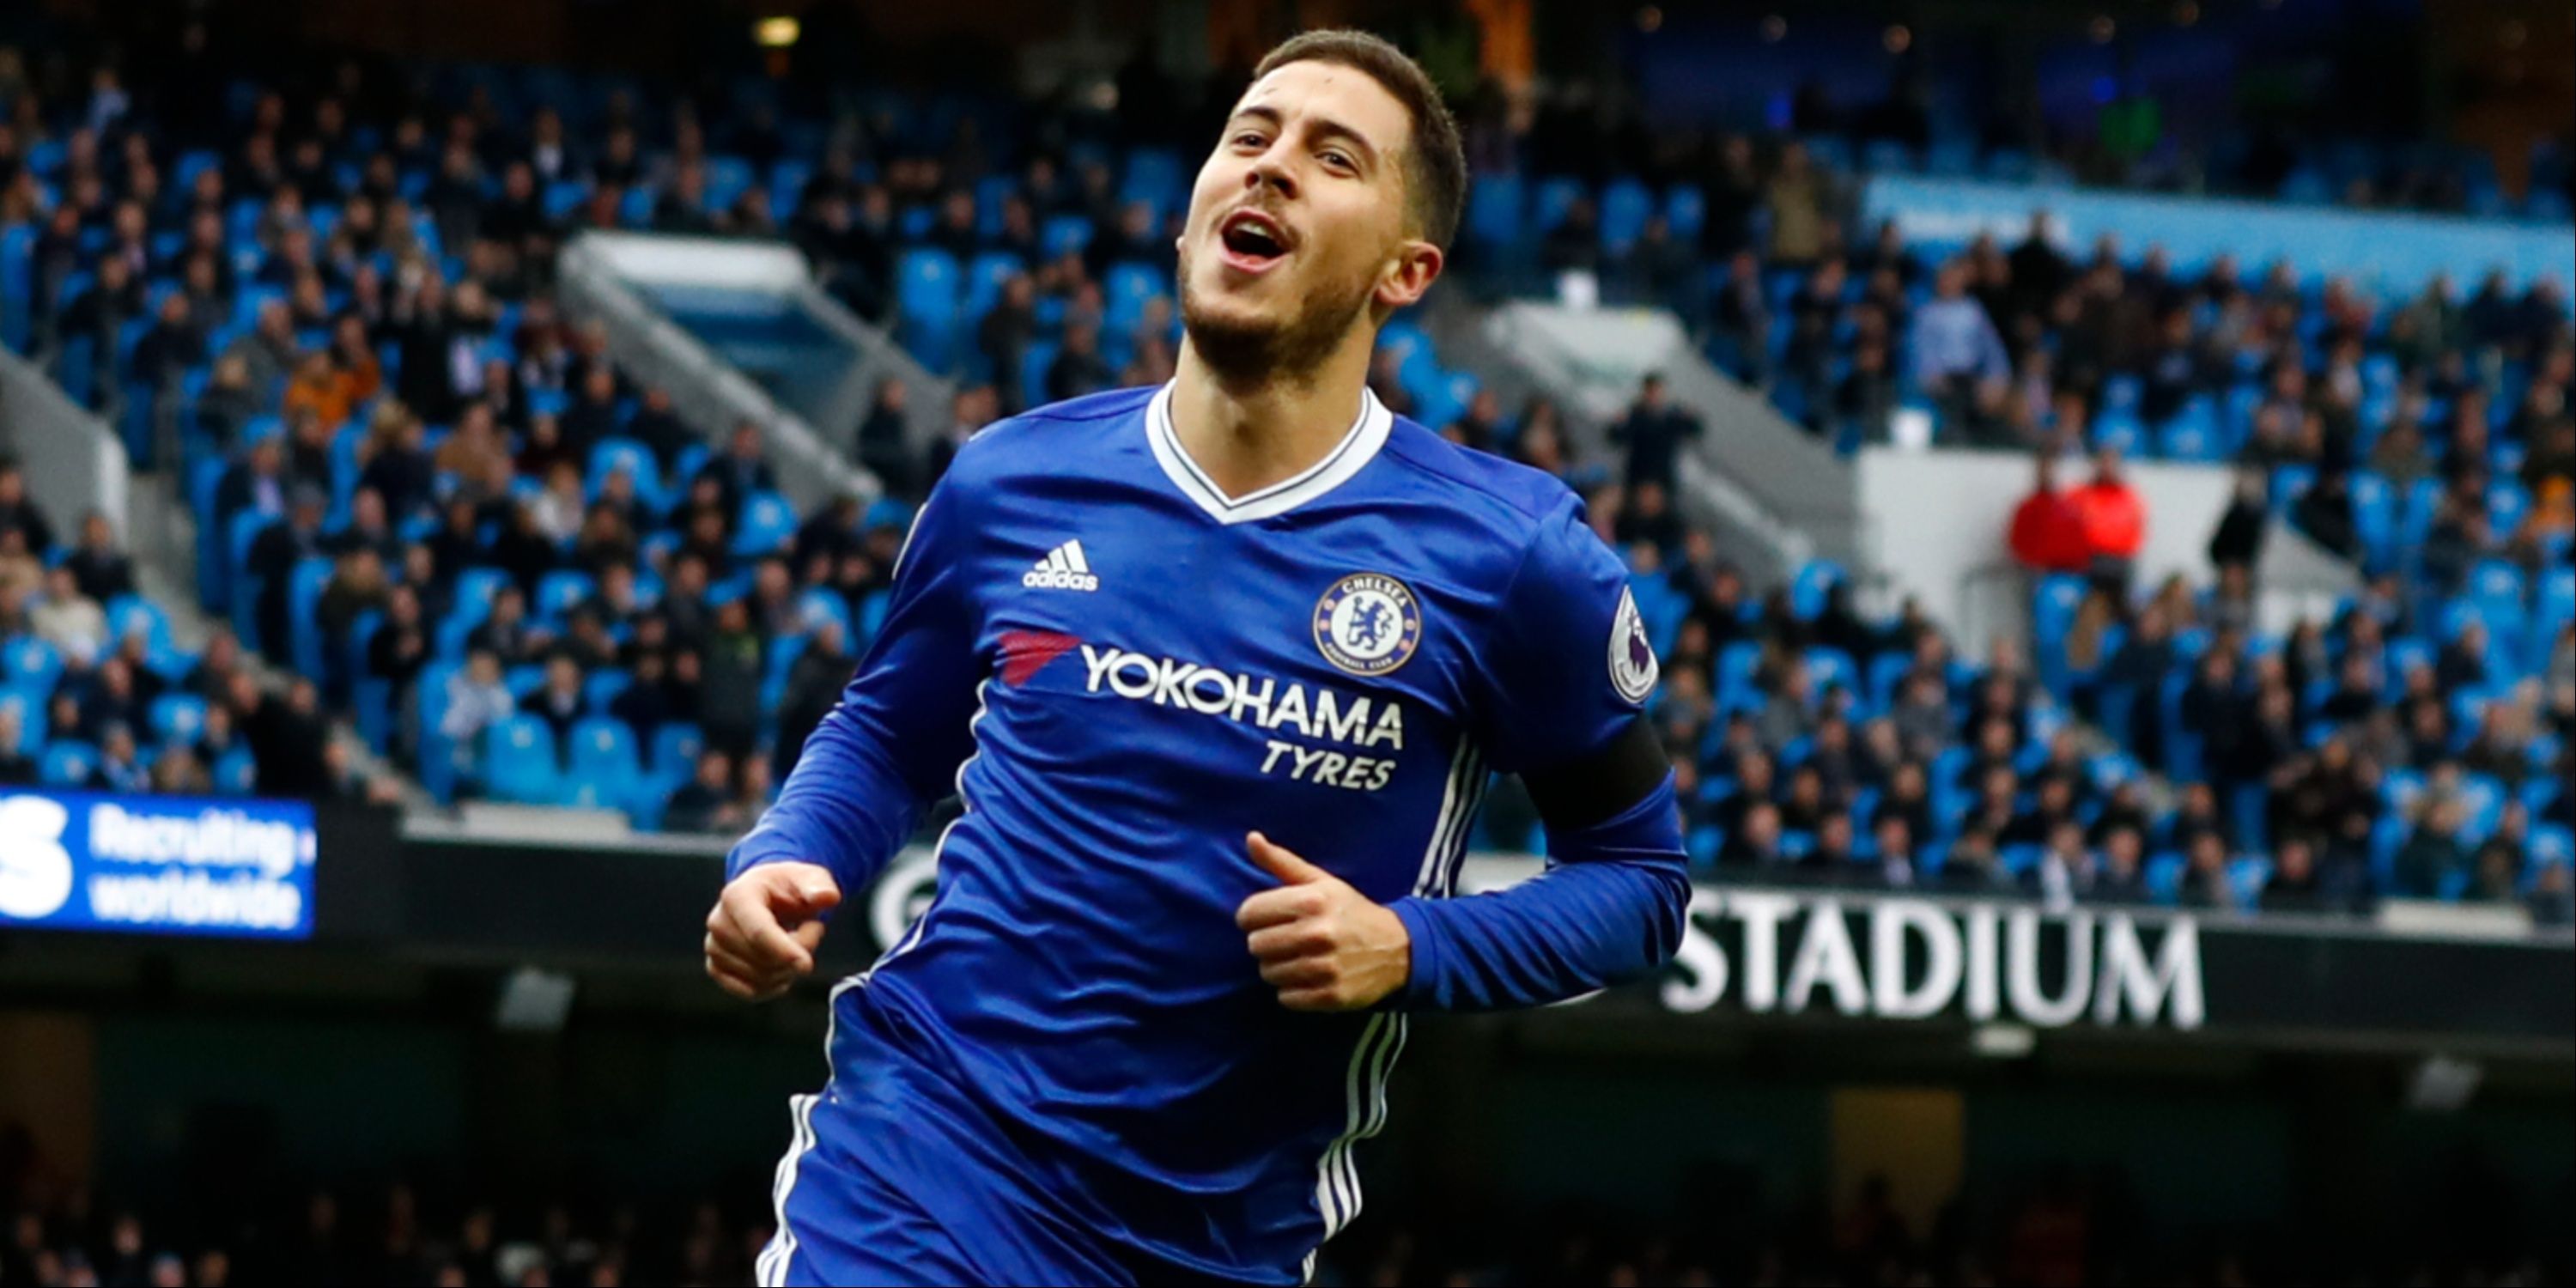 Chelsea's Eden Hazard